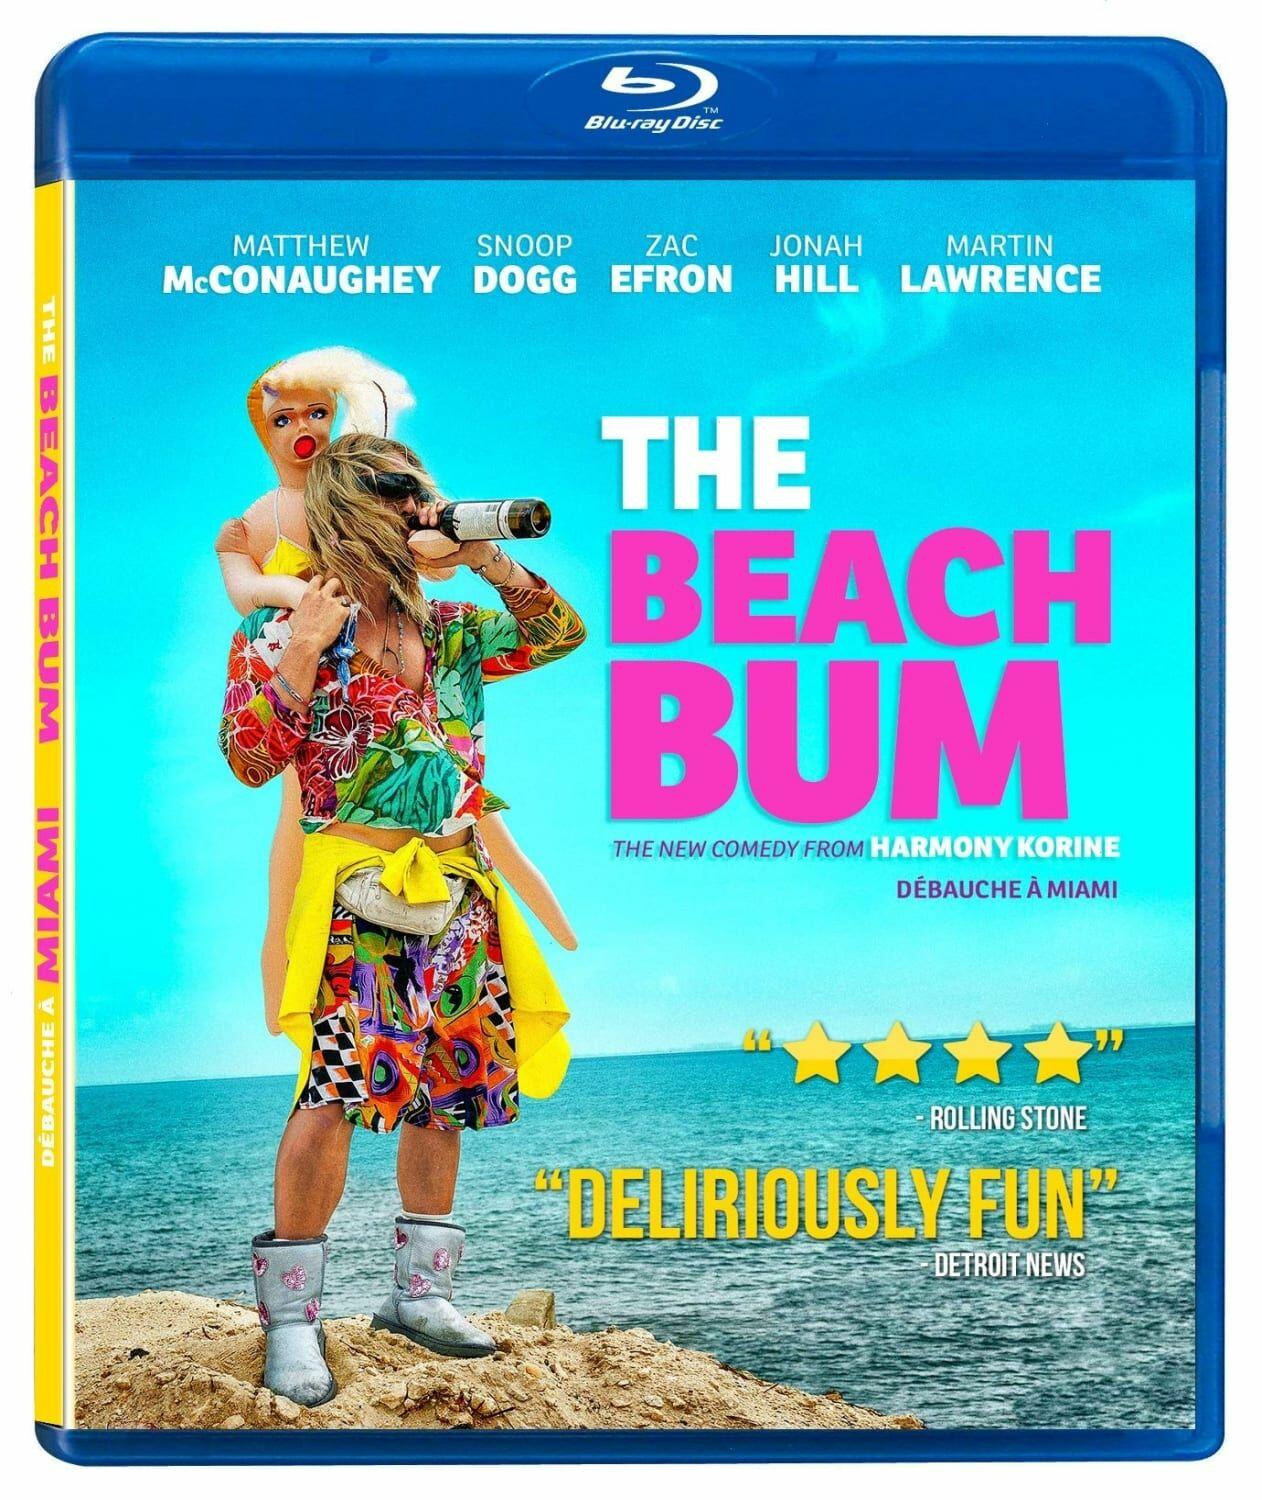 The Beach Bum (Bluray) on MovieShack